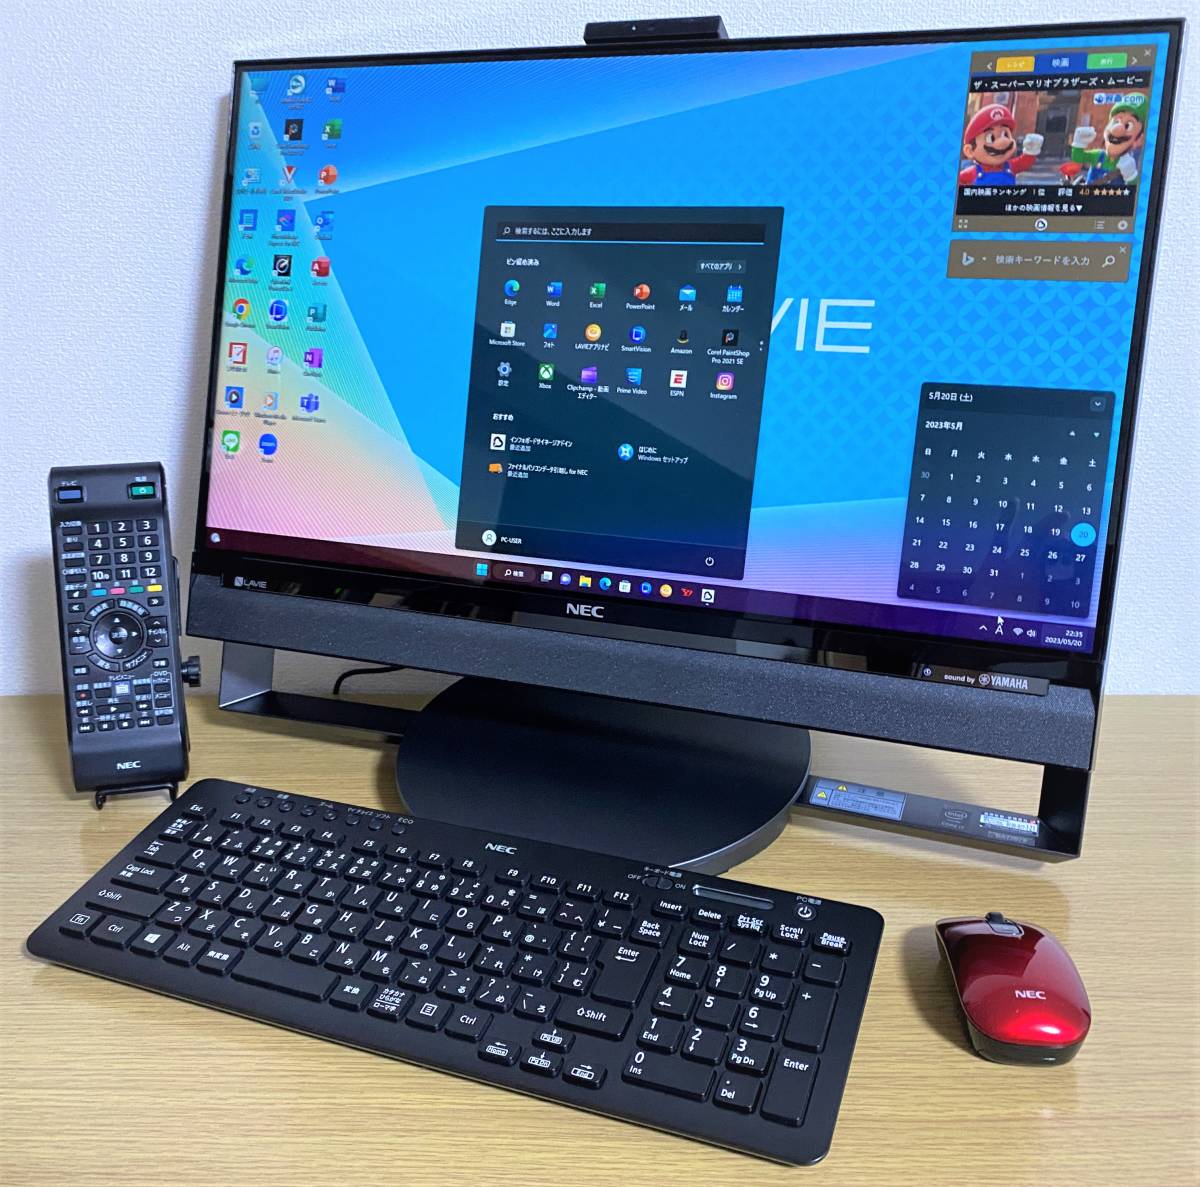 NEC LaVie Desk PC-DA770EAB デスクトップPC パソコン プレミア商品